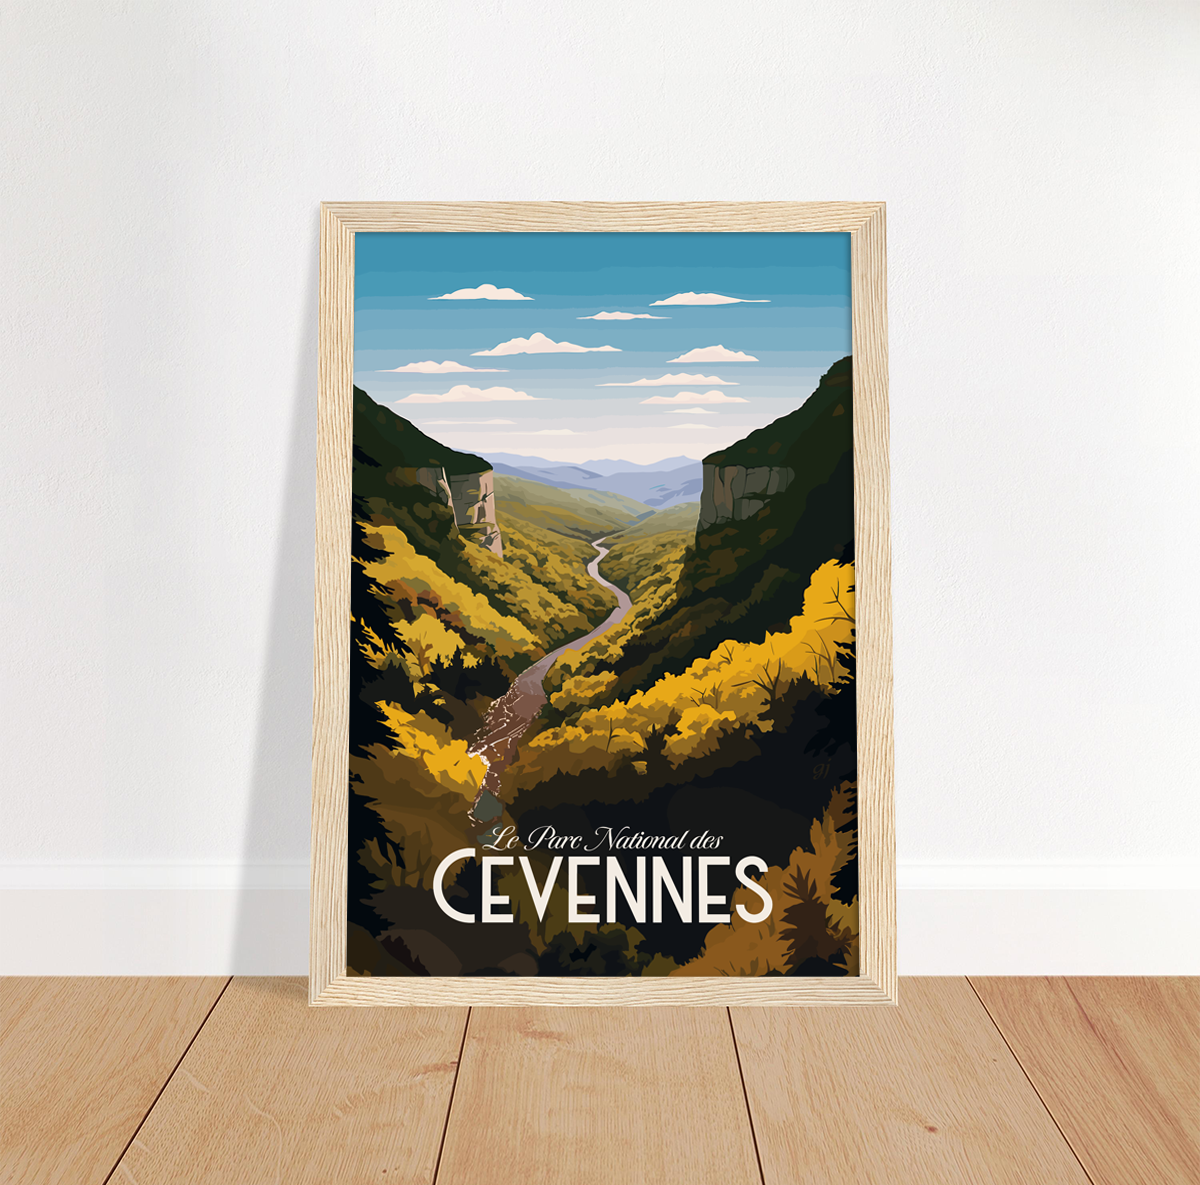 Cevennes poster by bon voyage design